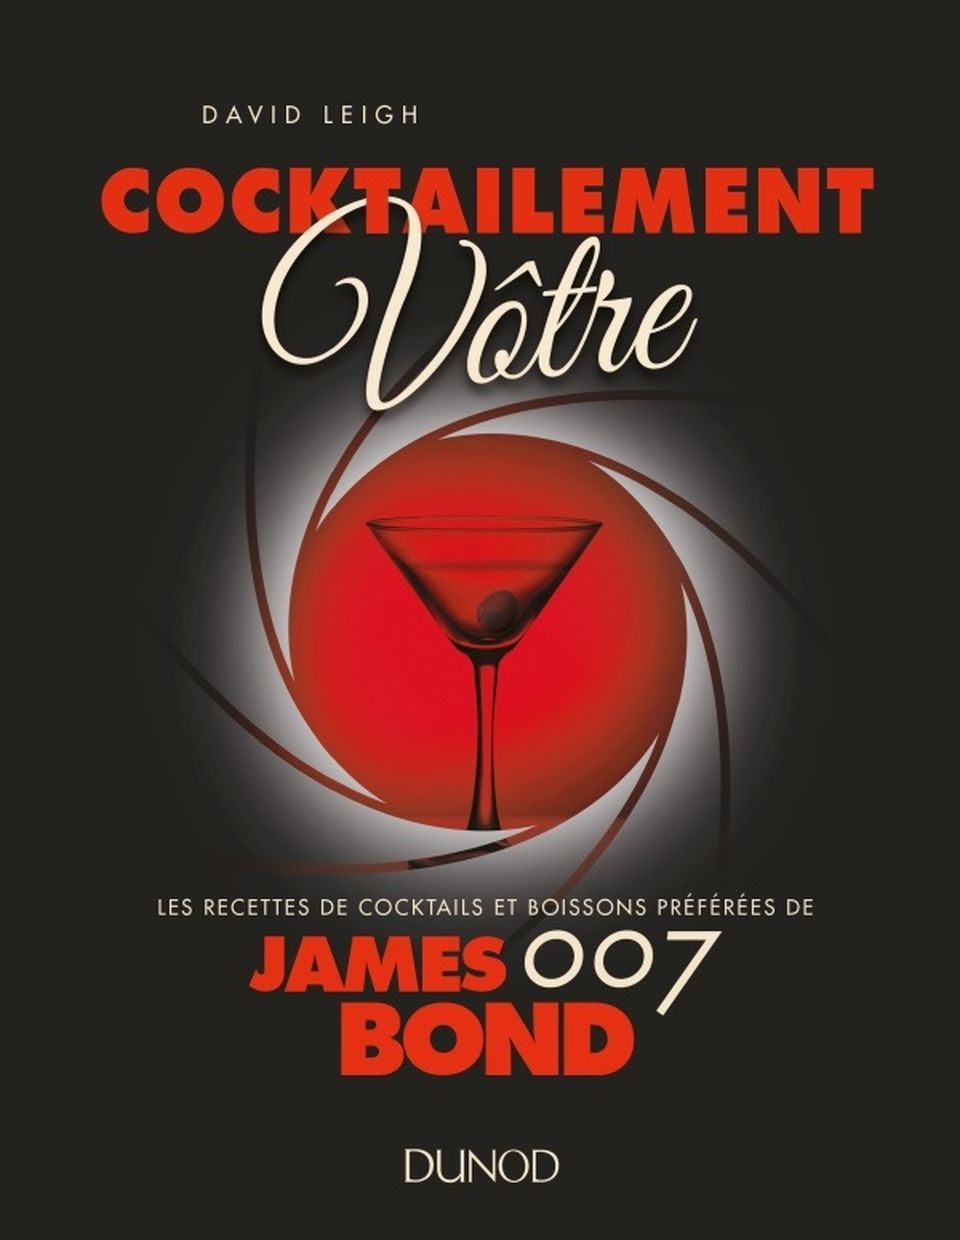 James Bond : Cocktailement Votre image